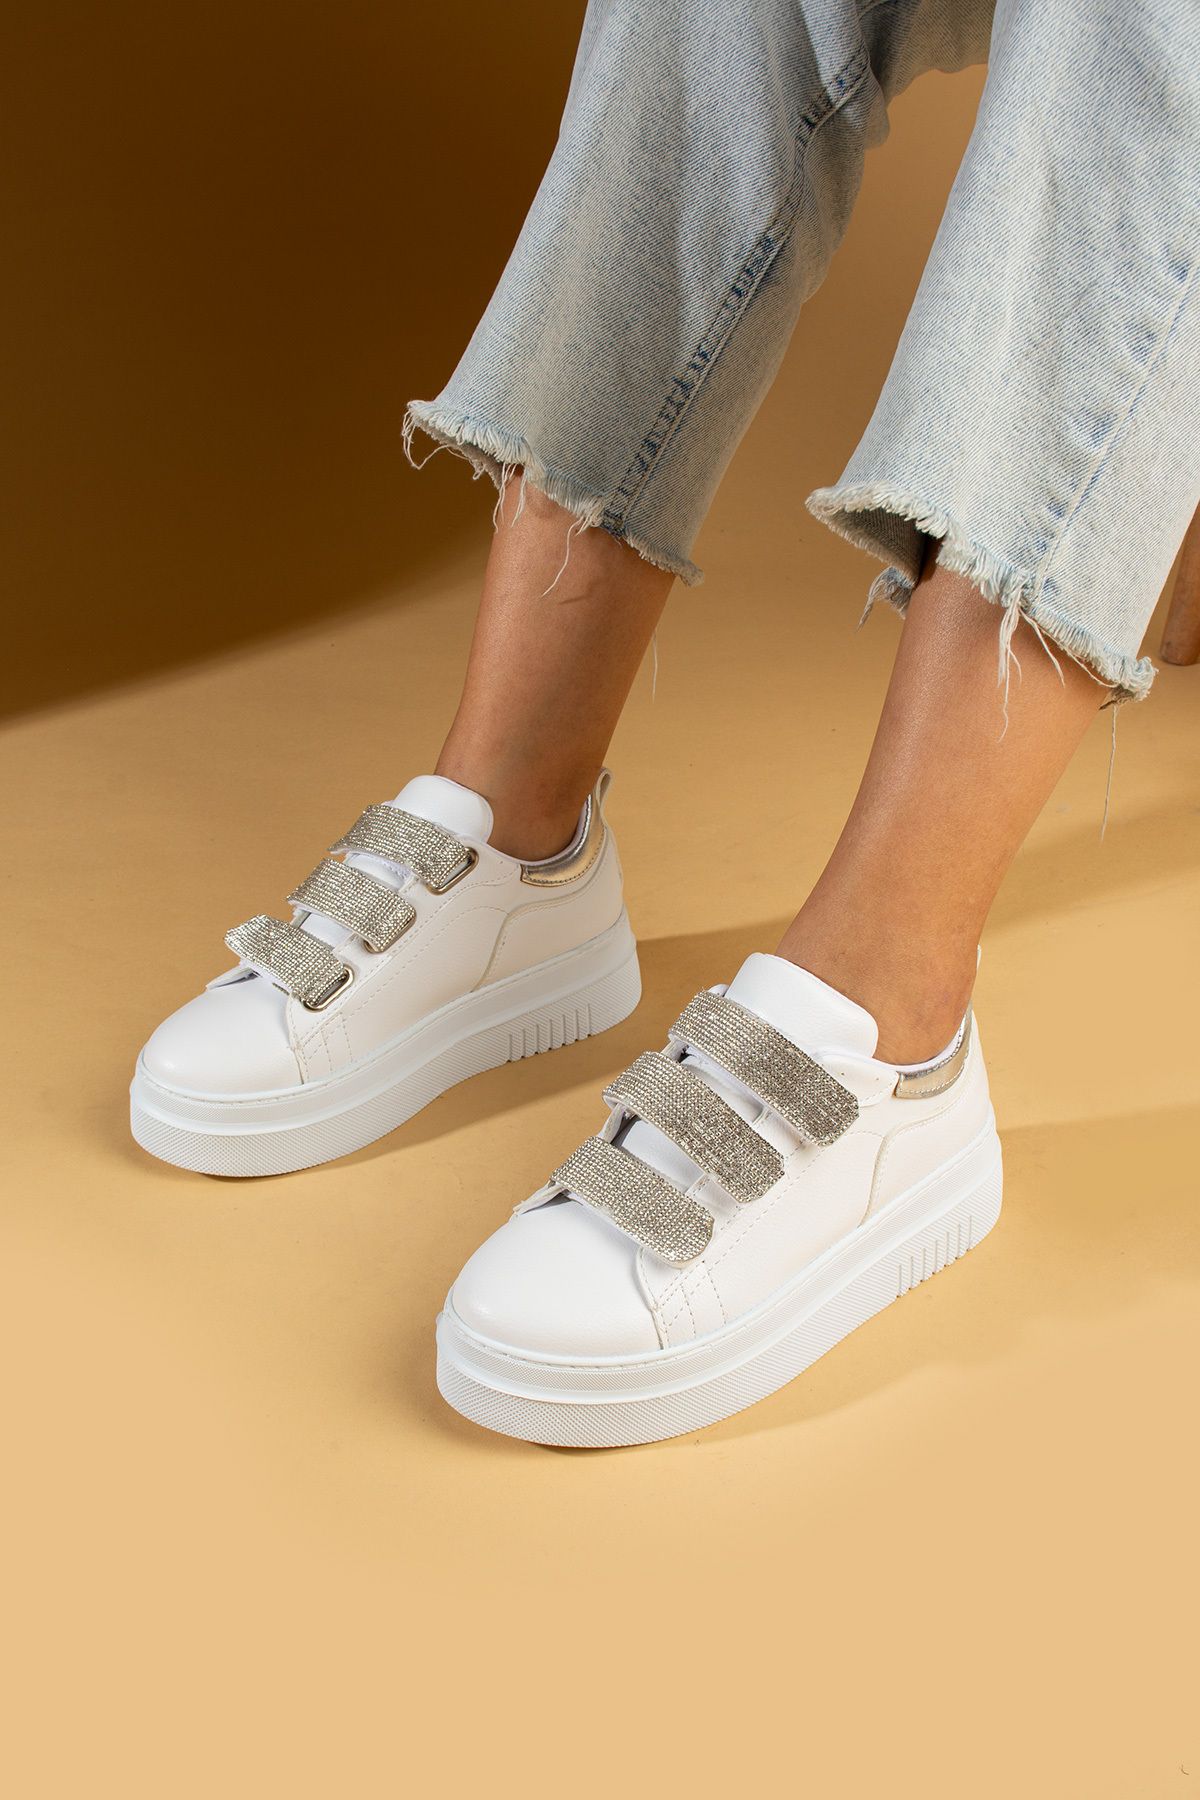 Pembe Potin Kadın Beyaz Poli Rahat Taban 3 Cırlı Bantlı Sneaker Ayakkabı